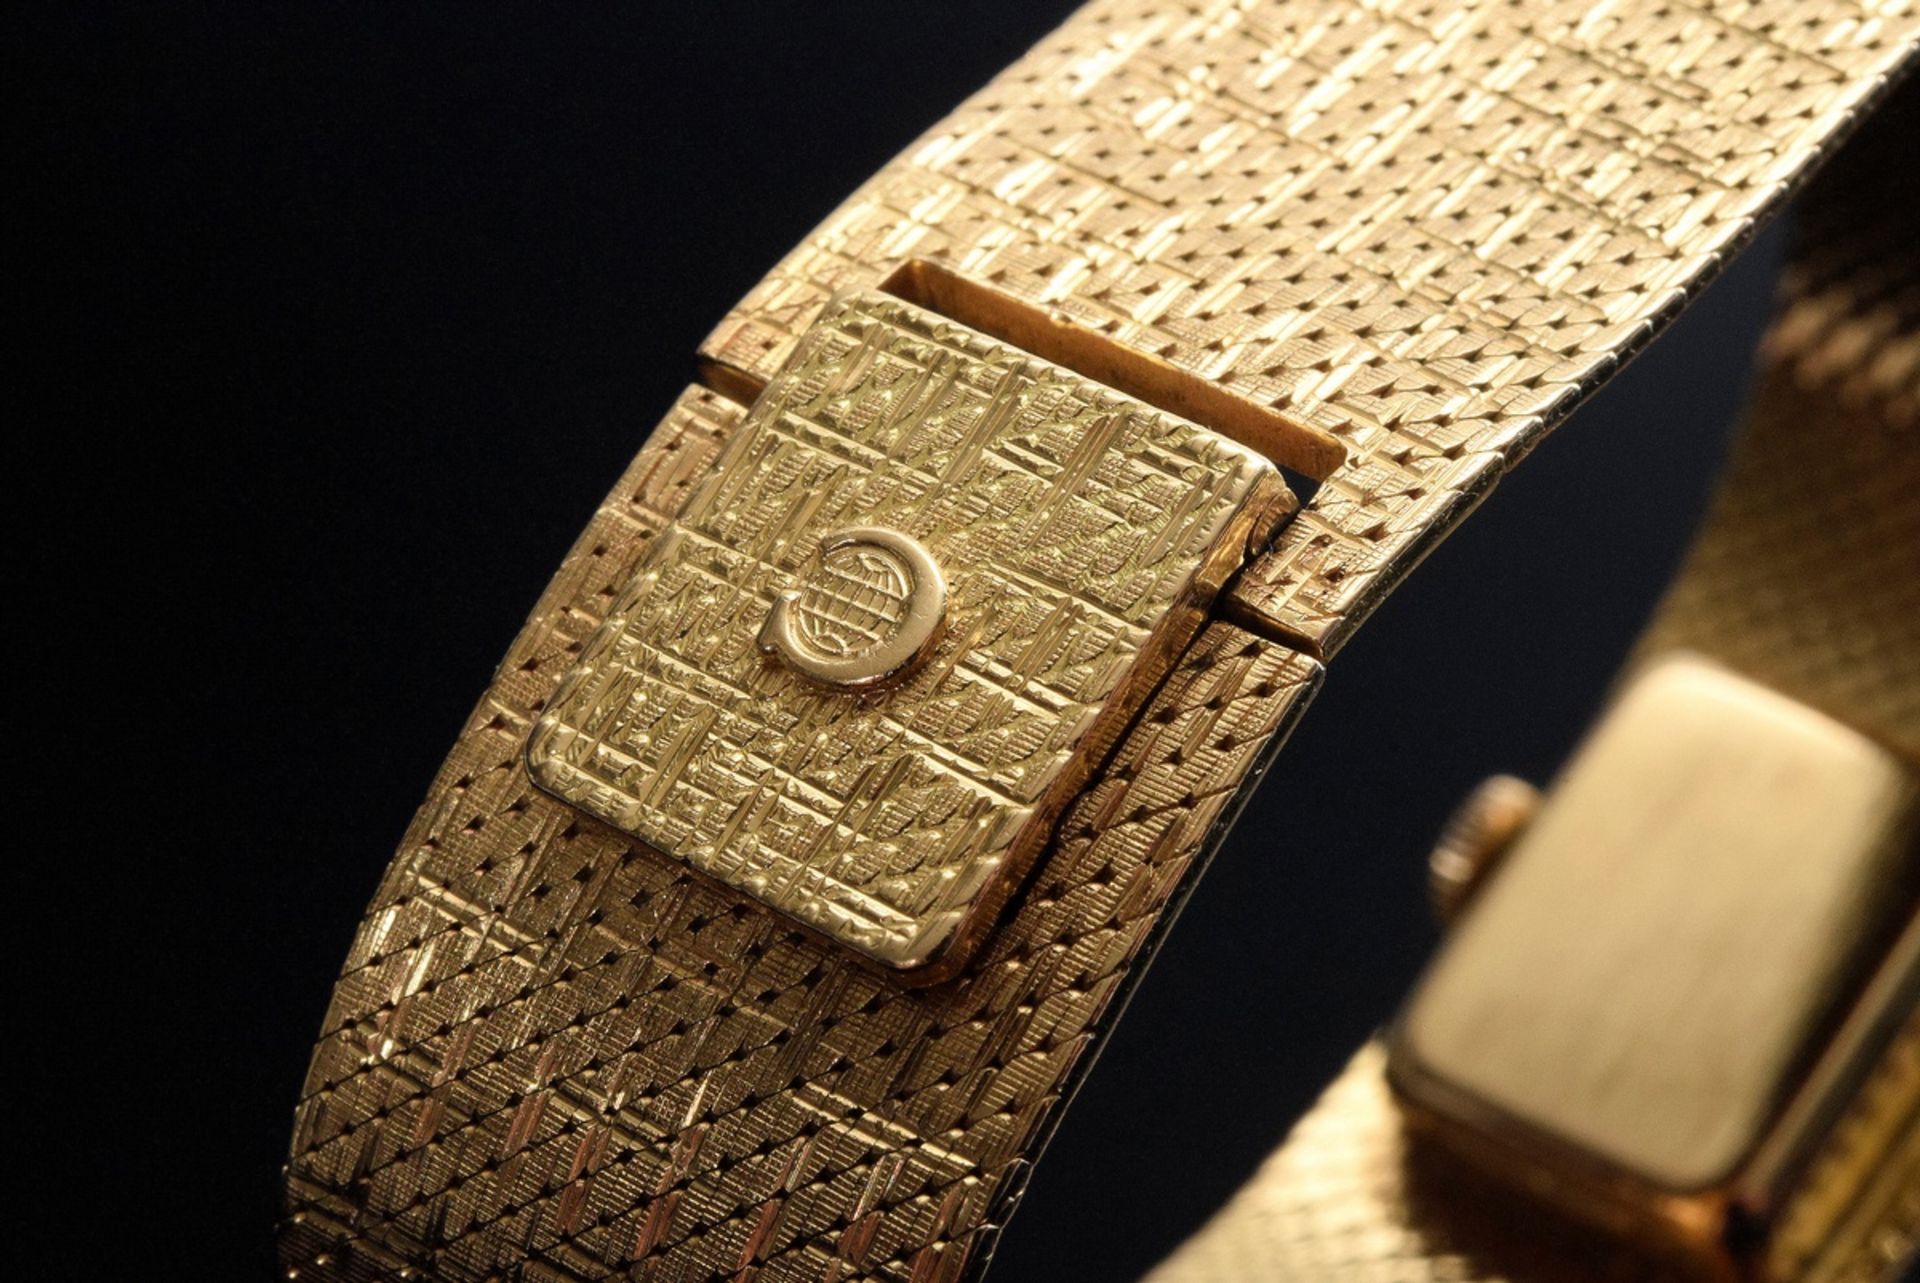 RG 585 Cyma Armbanduhr, Handaufzug, um 1960, 50,3g, L. 17,2cm, gangbar (keine Garantie auf Werk und - Bild 3 aus 4